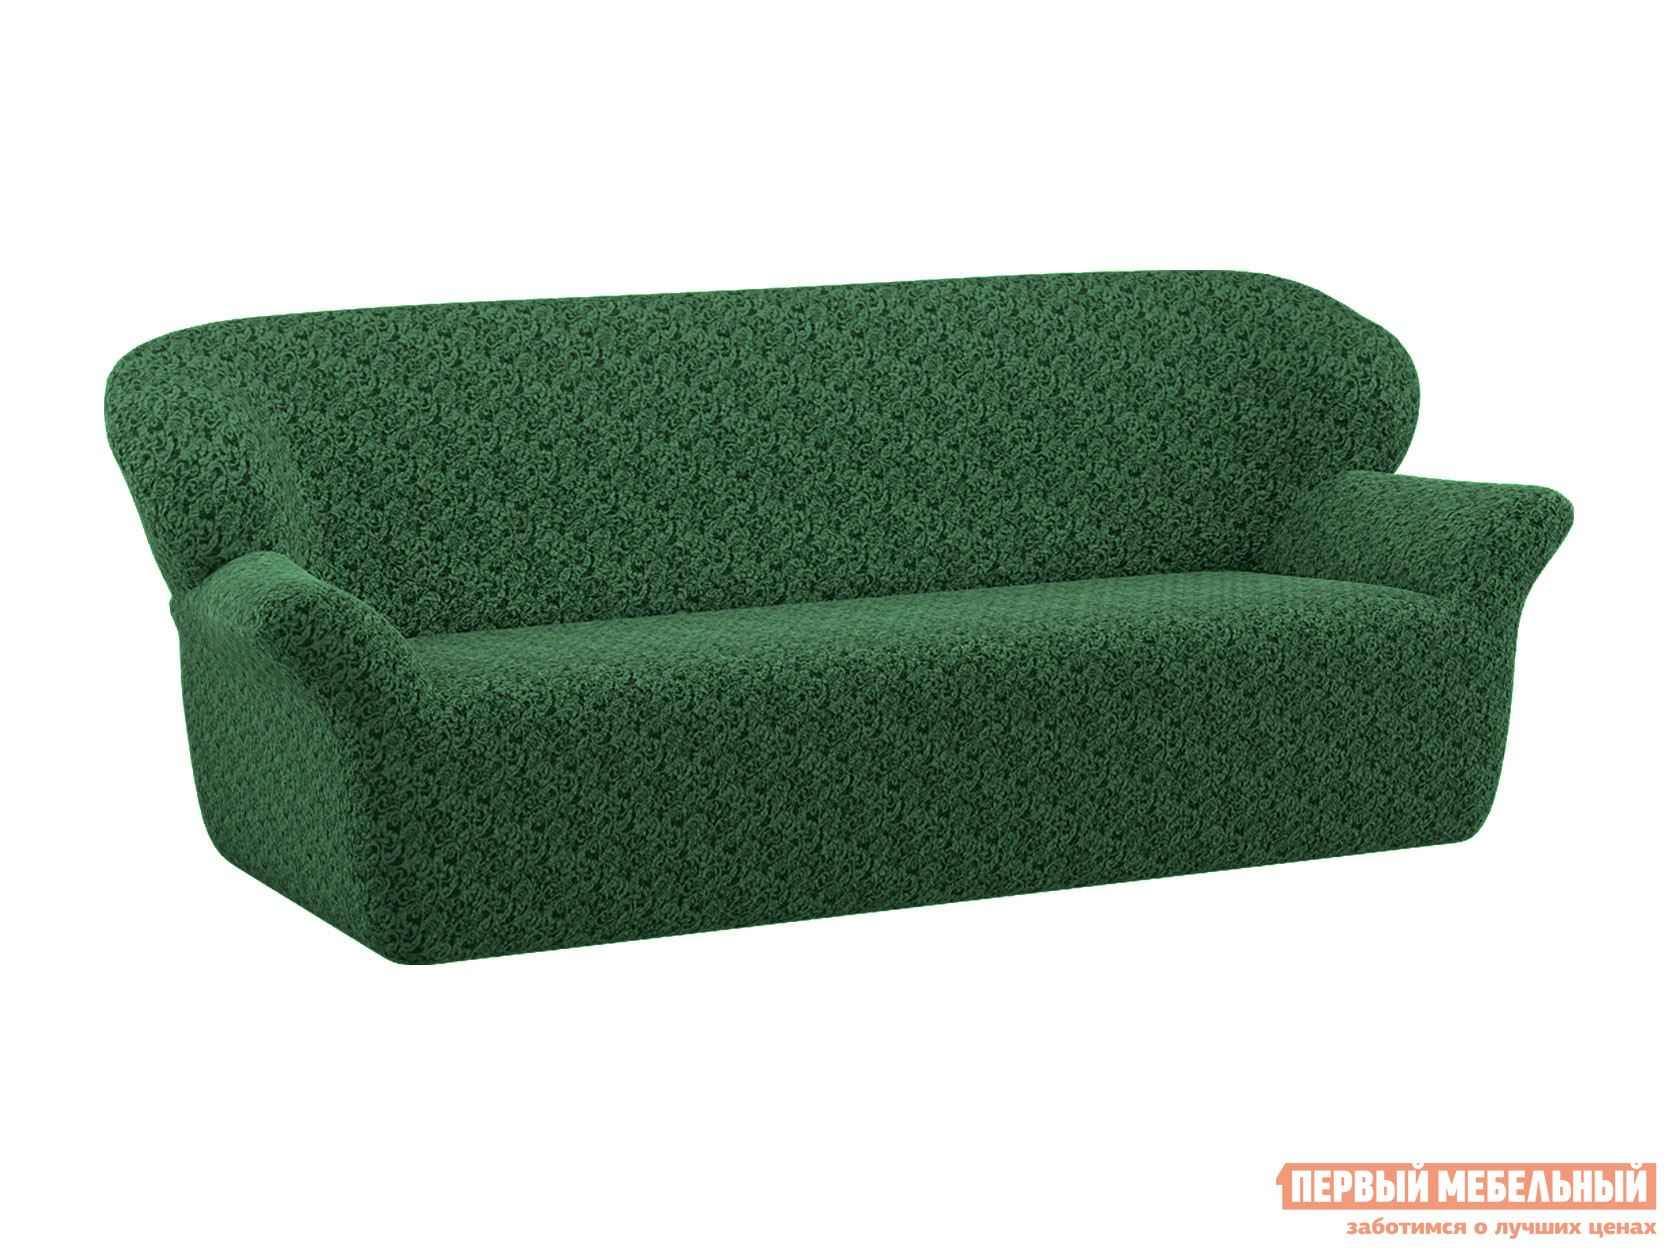 Чехол для мебели  Бургундия 2 Зеленый, жаккард от Первый Мебельный